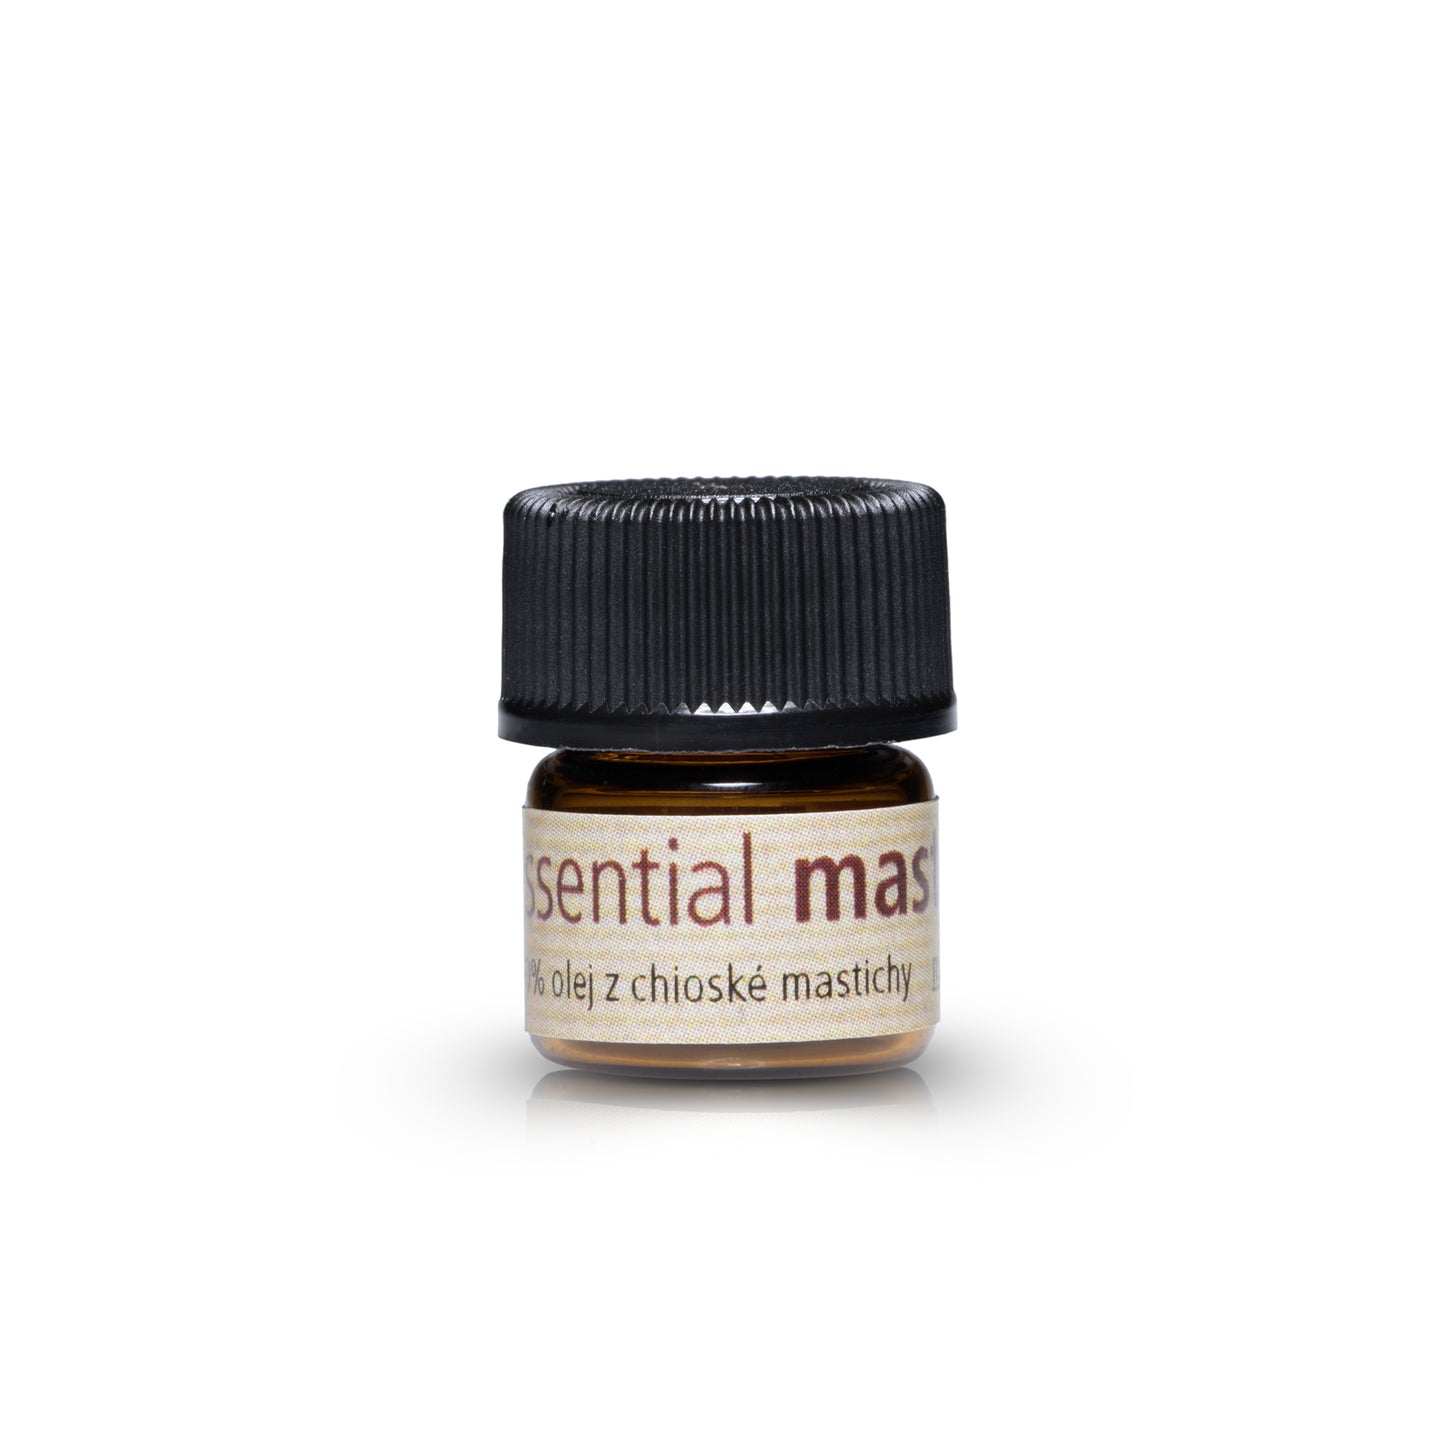 Mastic essential oil (1 ml) Masticlife